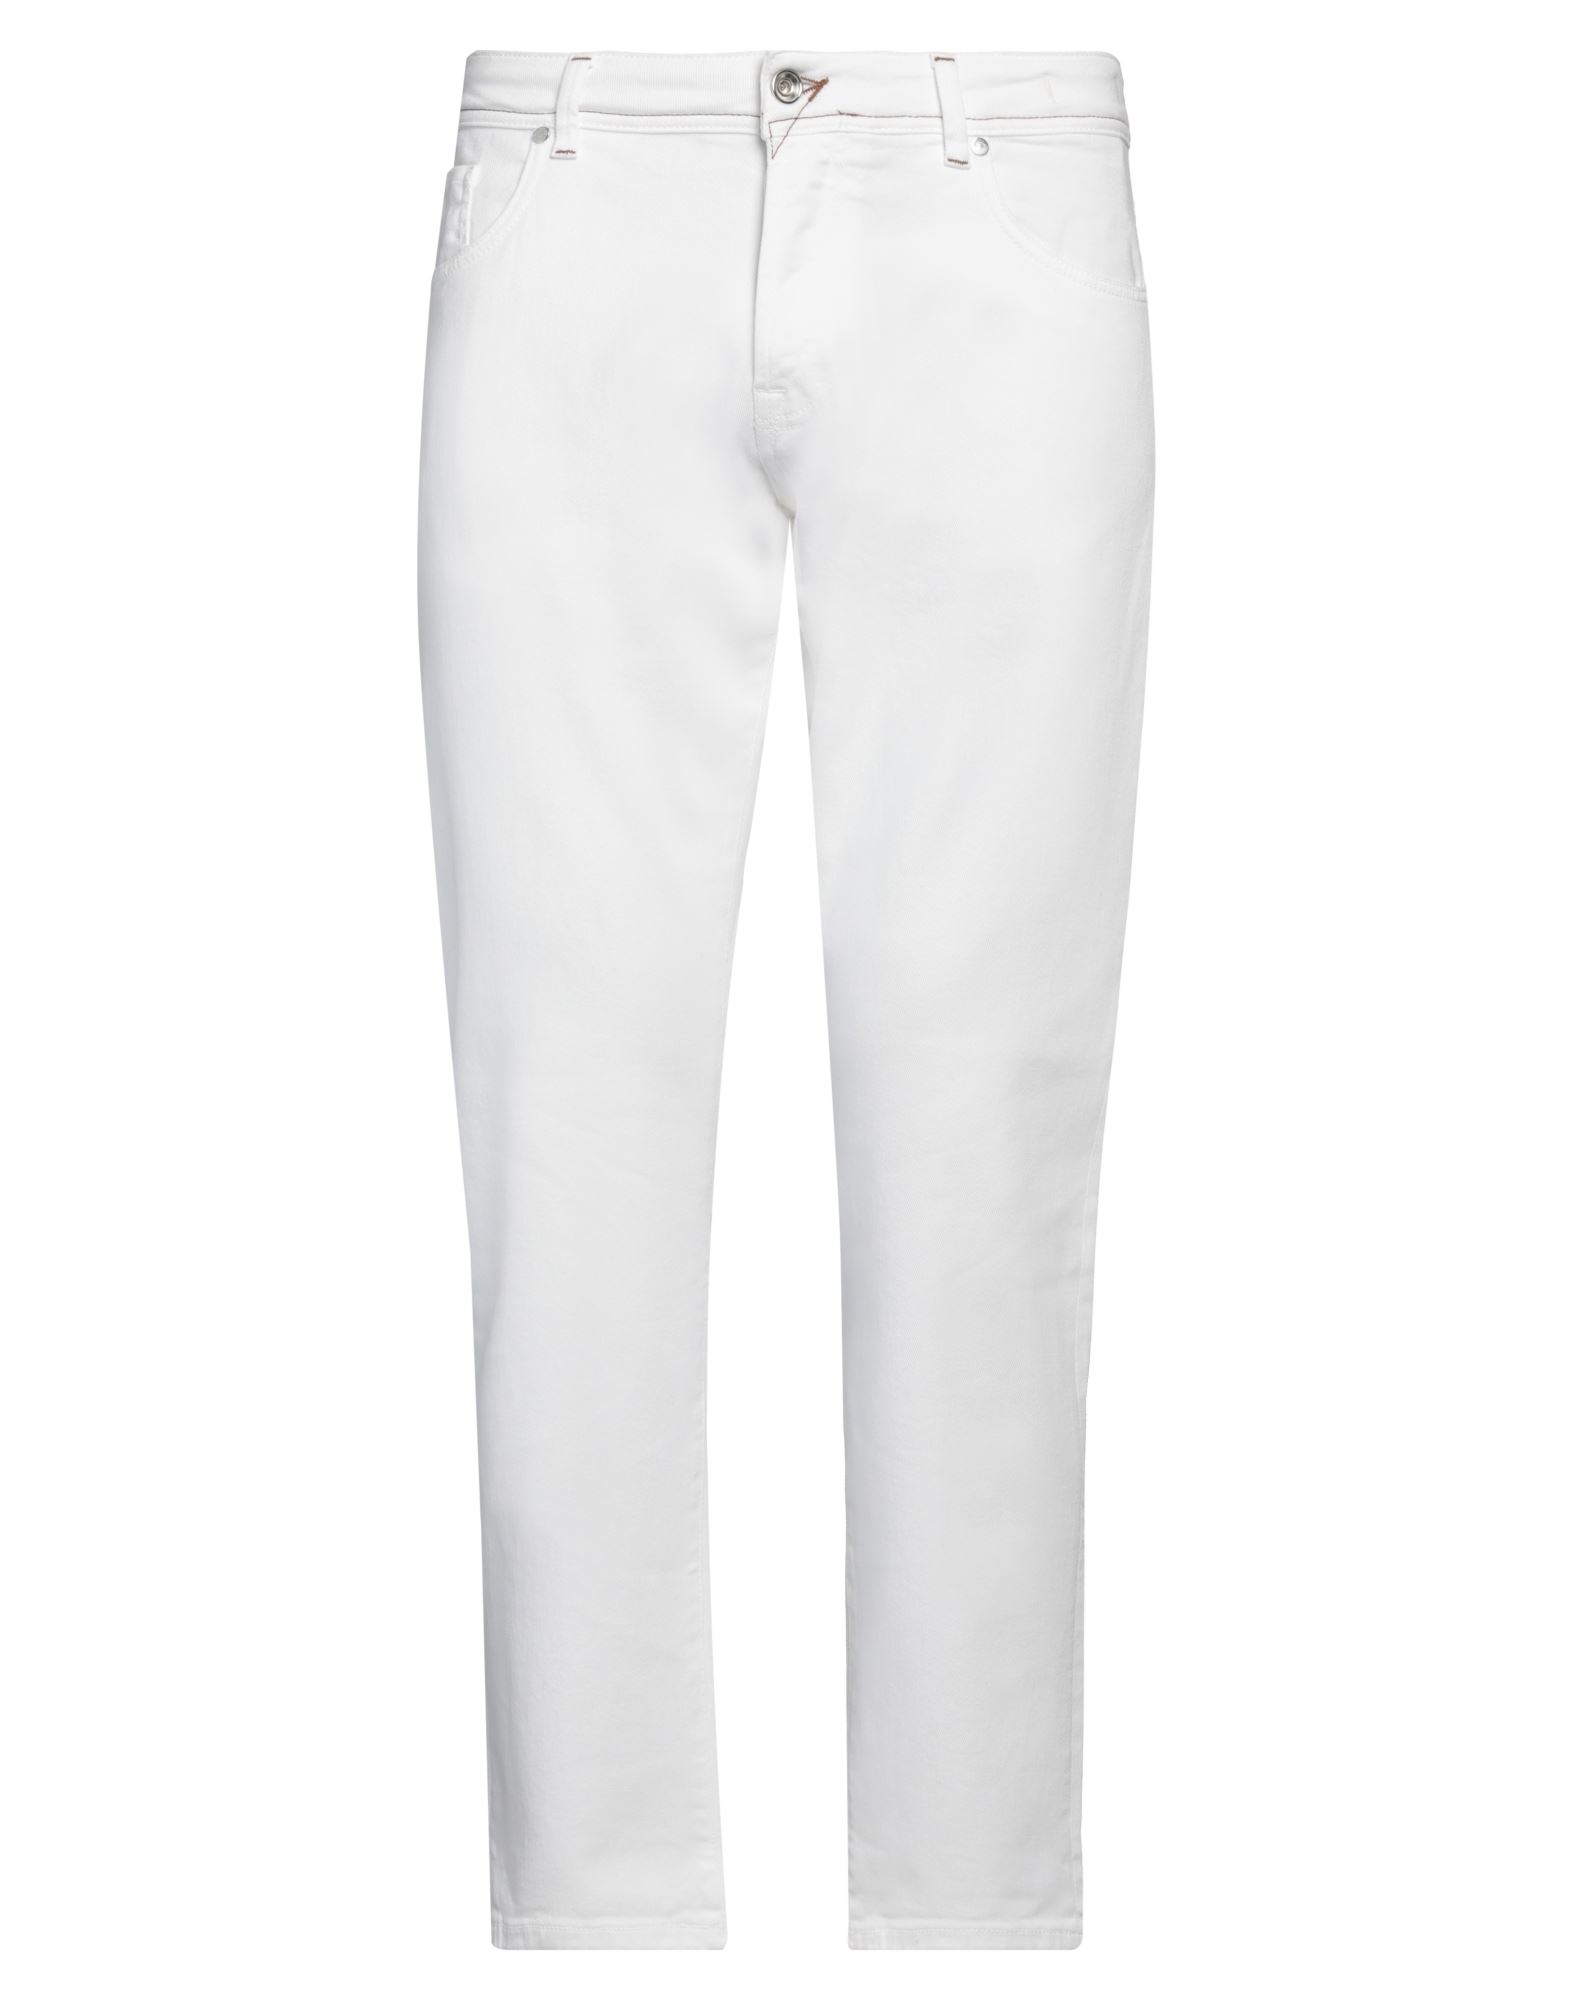 Bro-ship Pants In White